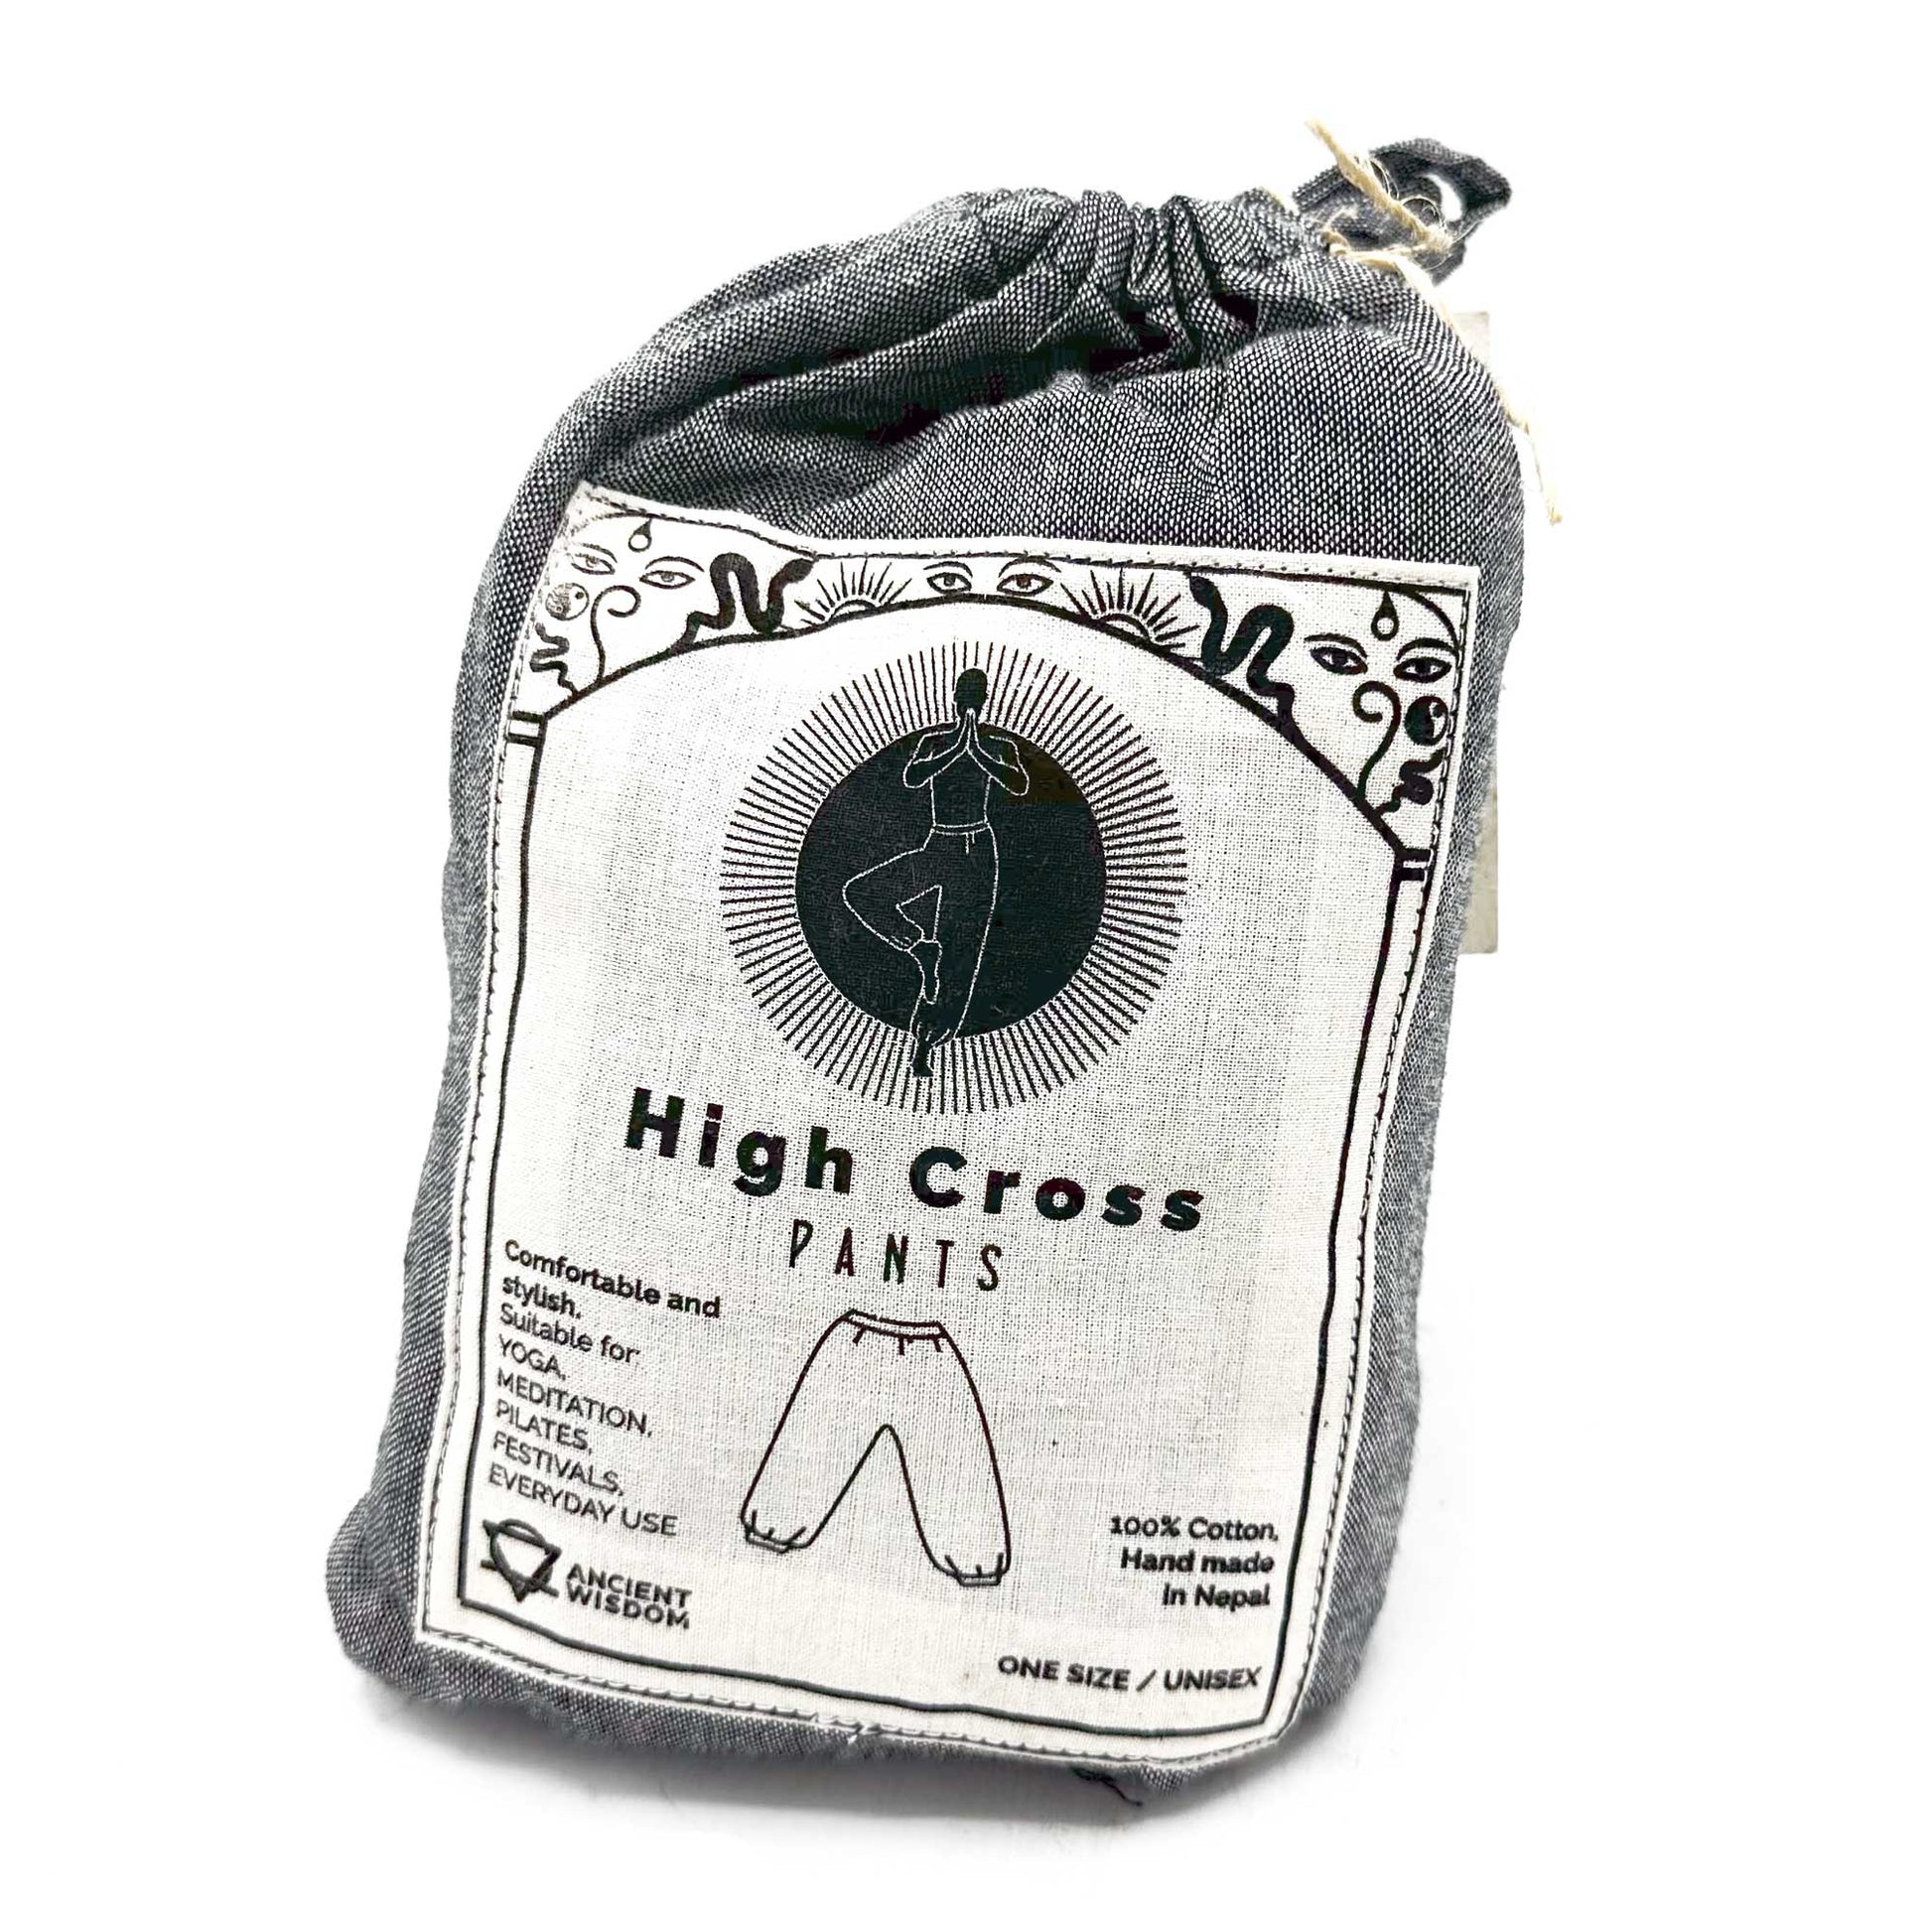 High Cross Himalayan Print on Grey Yoga Pants